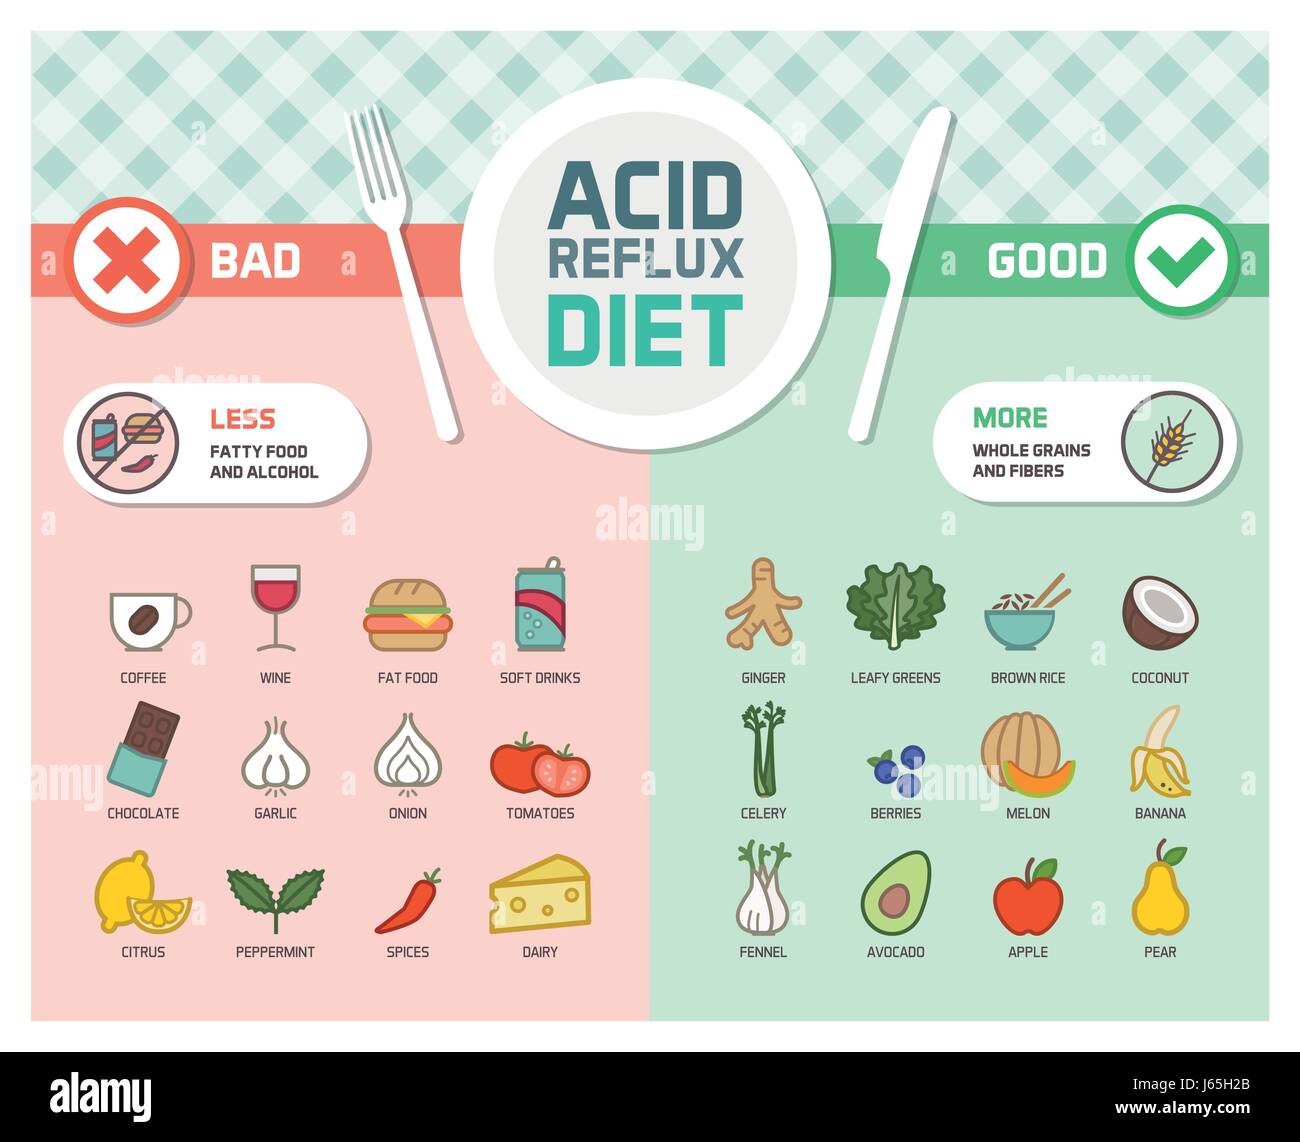 Acid Reflux und Gerd Symptome Prävention Ernährung mit Trigger Lebensmittel und entzündungshemmende gesunde Ernährung Stock Vektor